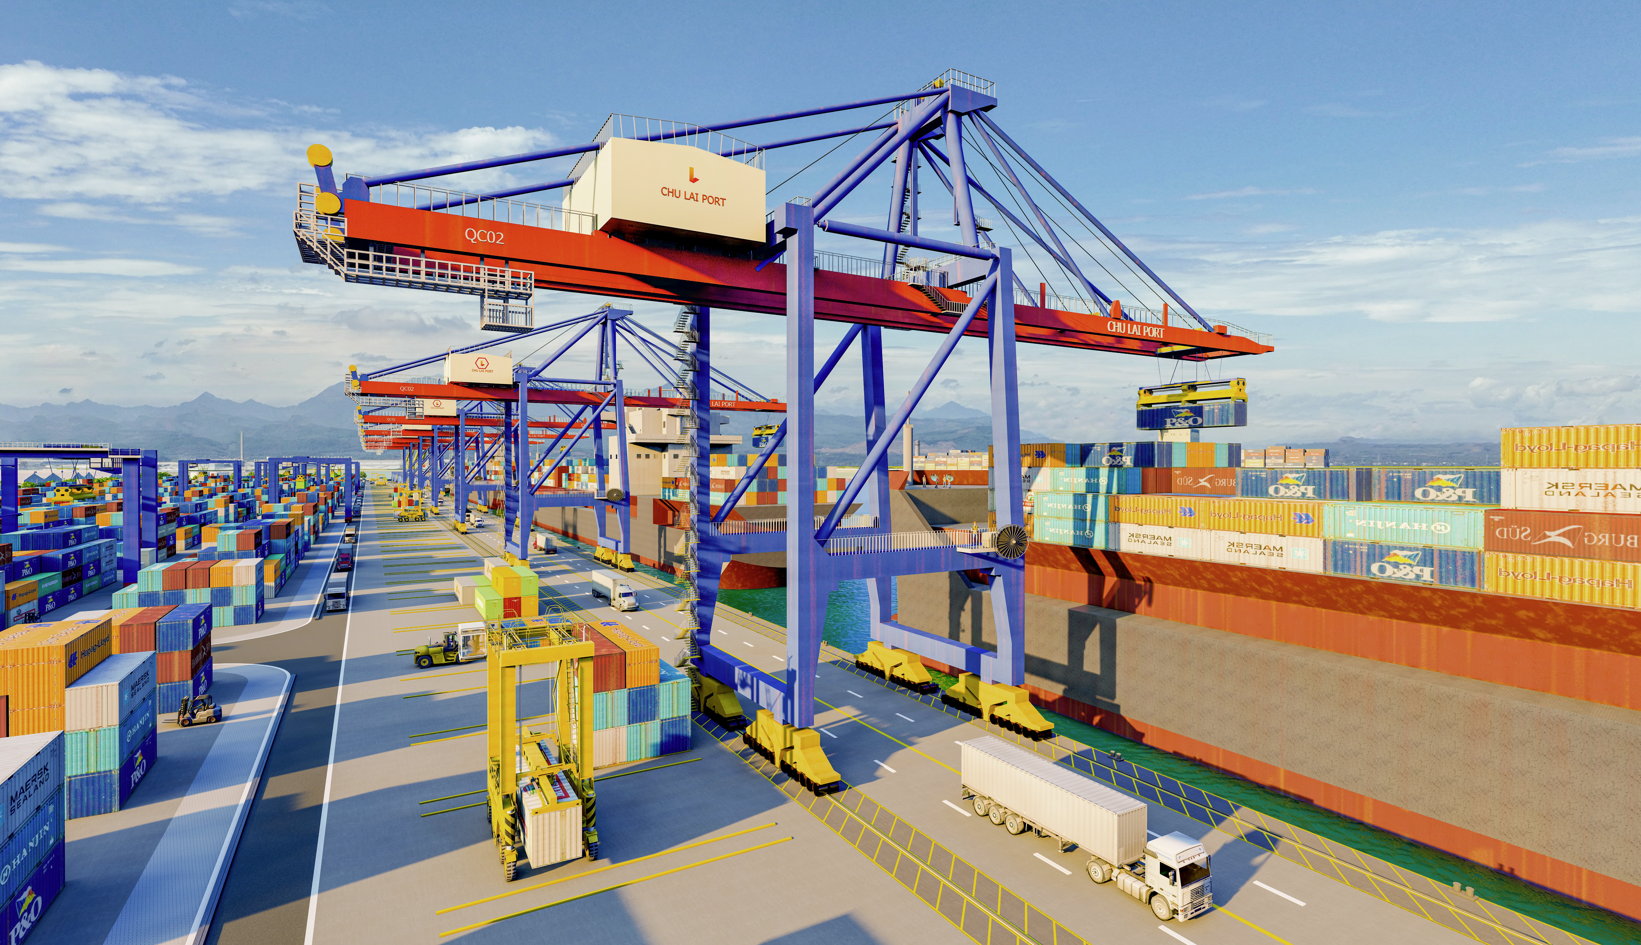 Doanh nghiệp Logistics miền Trung xây dựng mô hình và giải pháp trọn gói  - Ảnh 5.